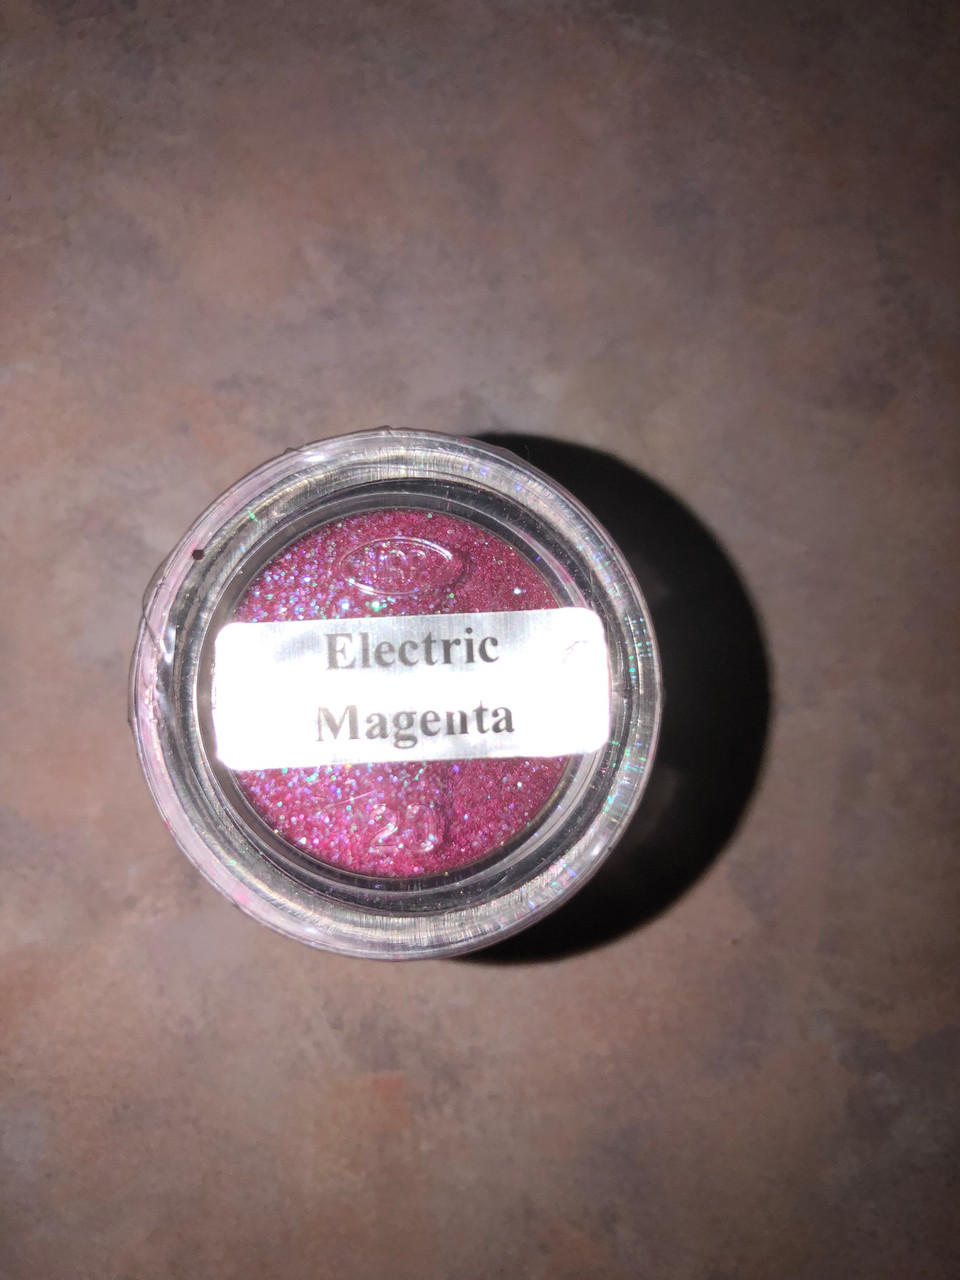 Electric Magenta Cosmetic Glitter Powder- 1 oz jar